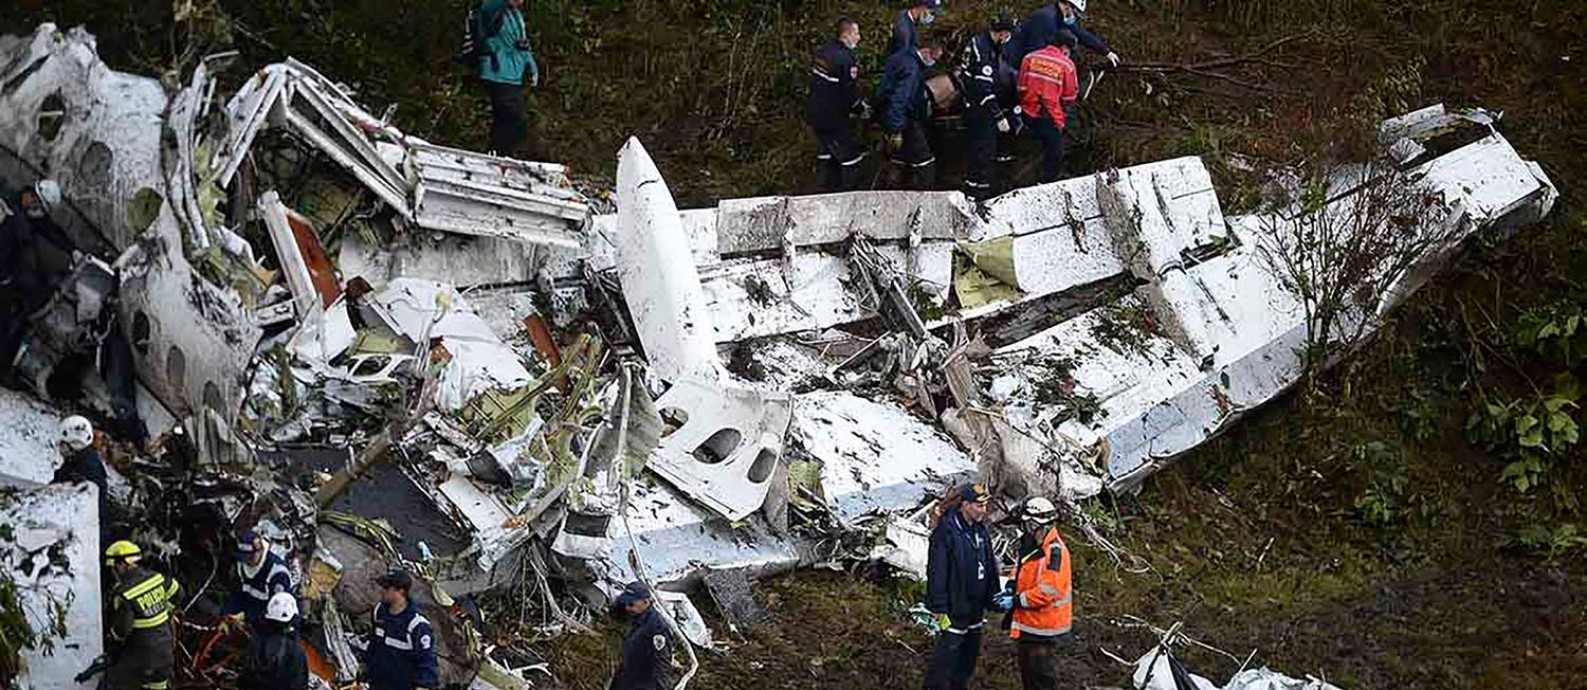 O avião levava 80 pessoas e caiu a três quilômetros do aeroporto. Foto: RAUL ARBOLEDA / AFP